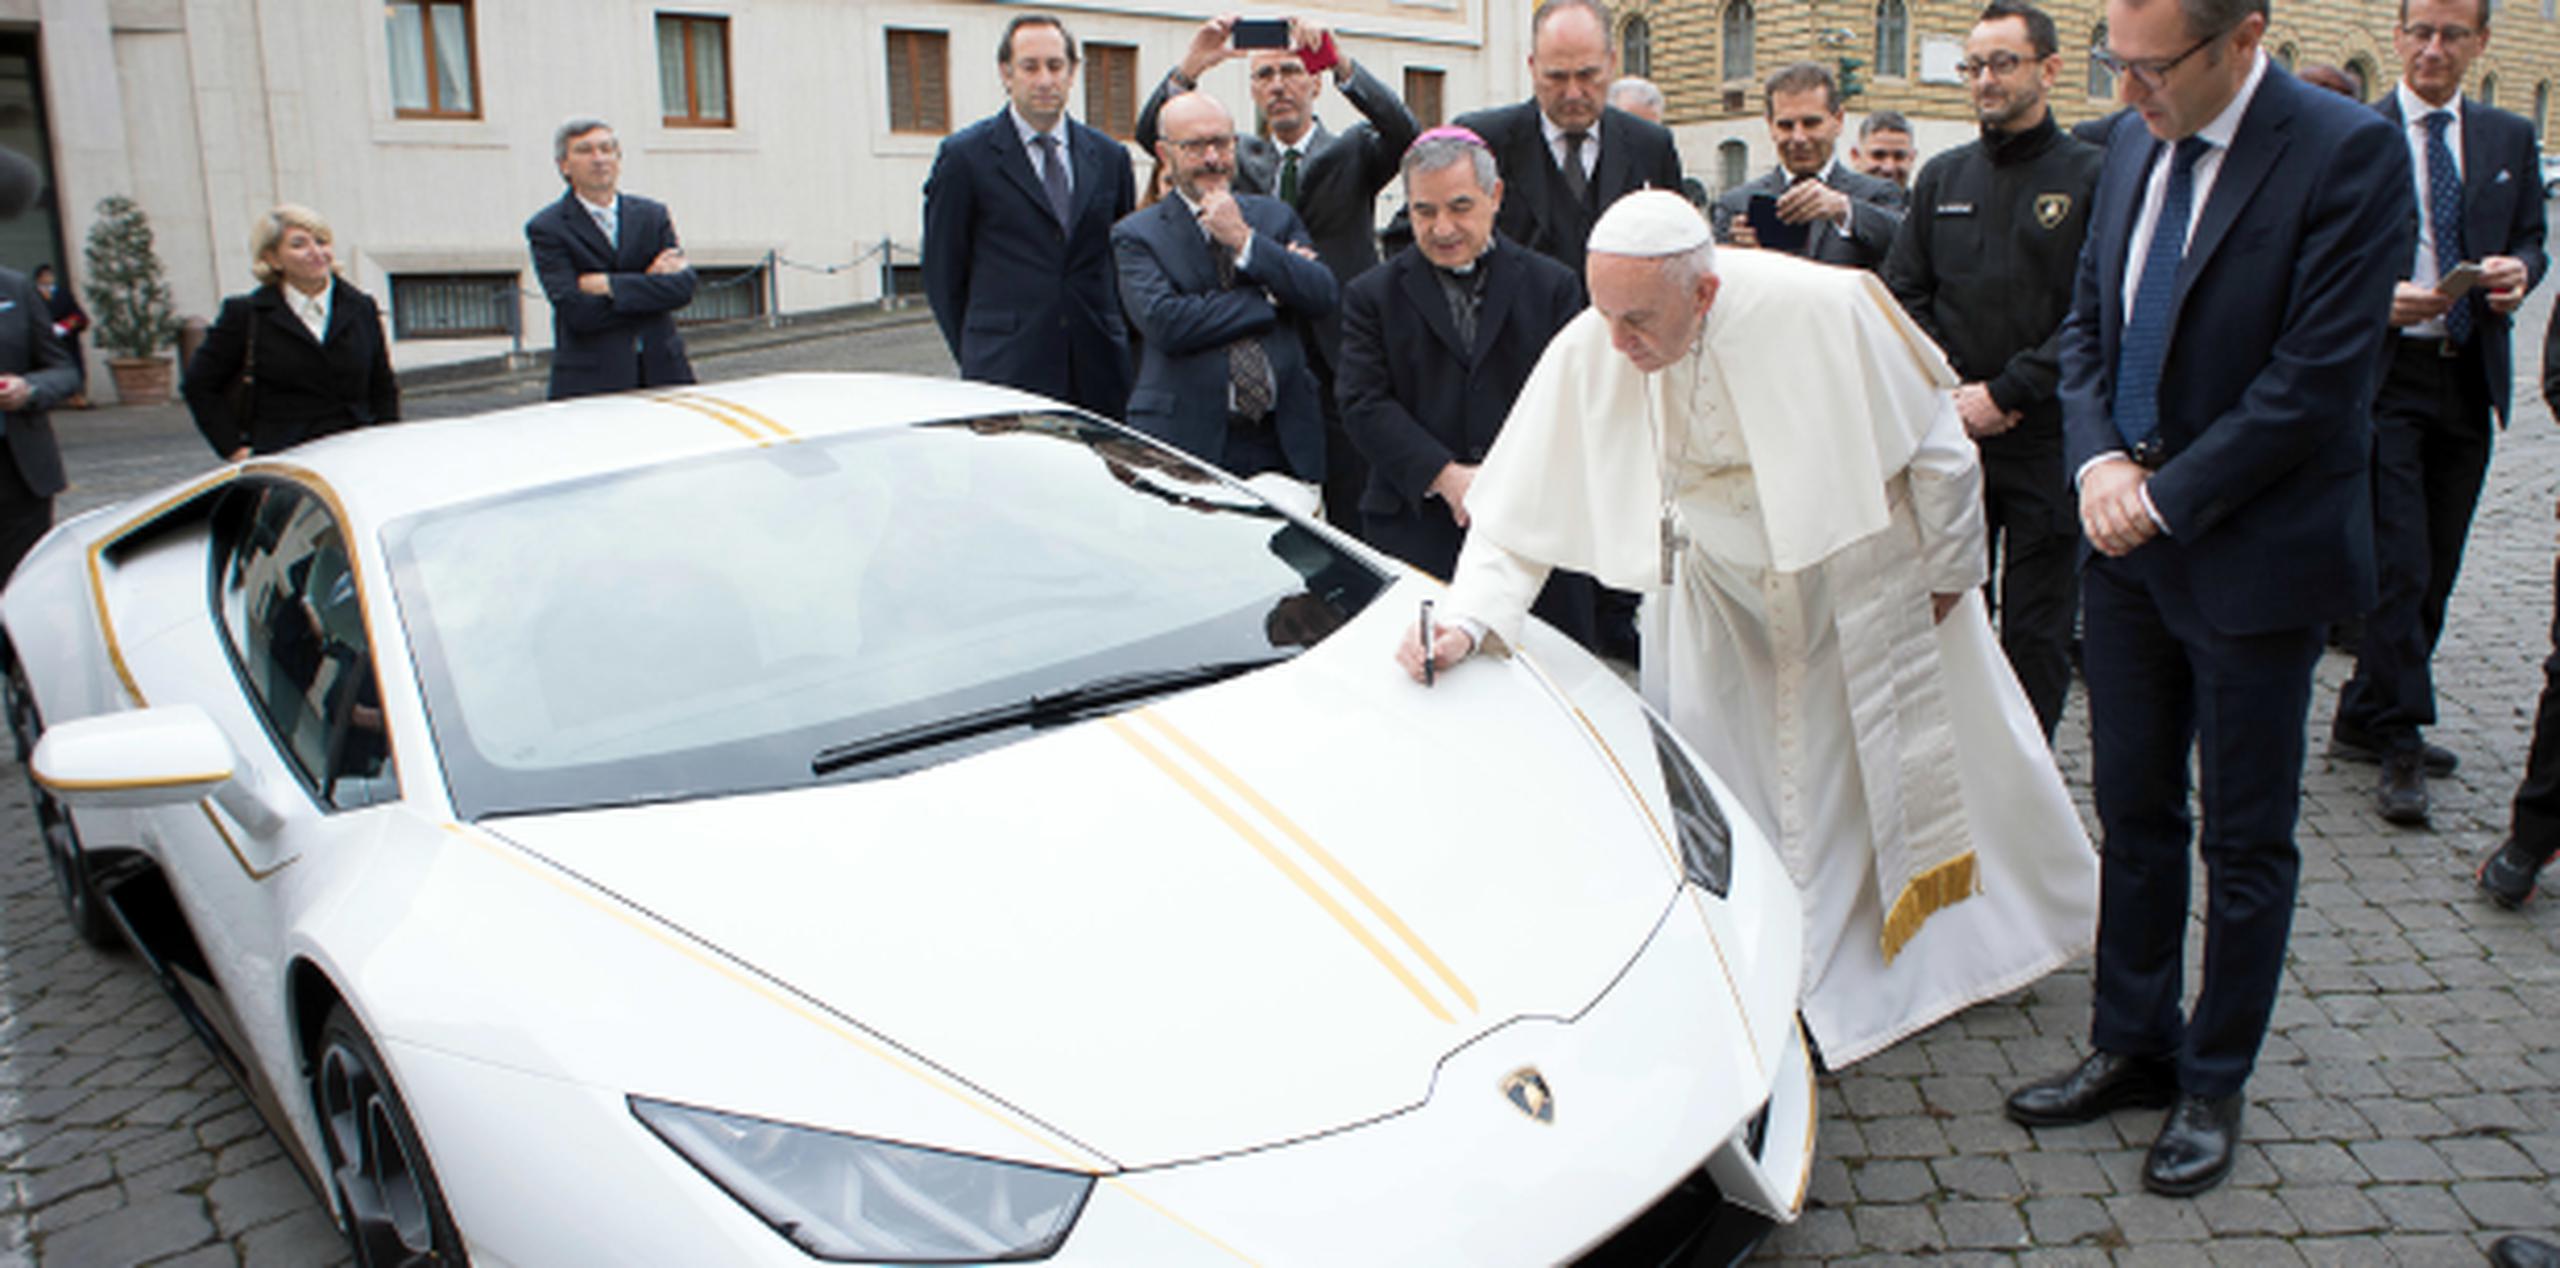 El papa Francisco firma el Lamborghini Huracan que le regalaron y que subastará para su labor benéfica. (Servizio Fotografico-L'Osservatore Romano via AP)